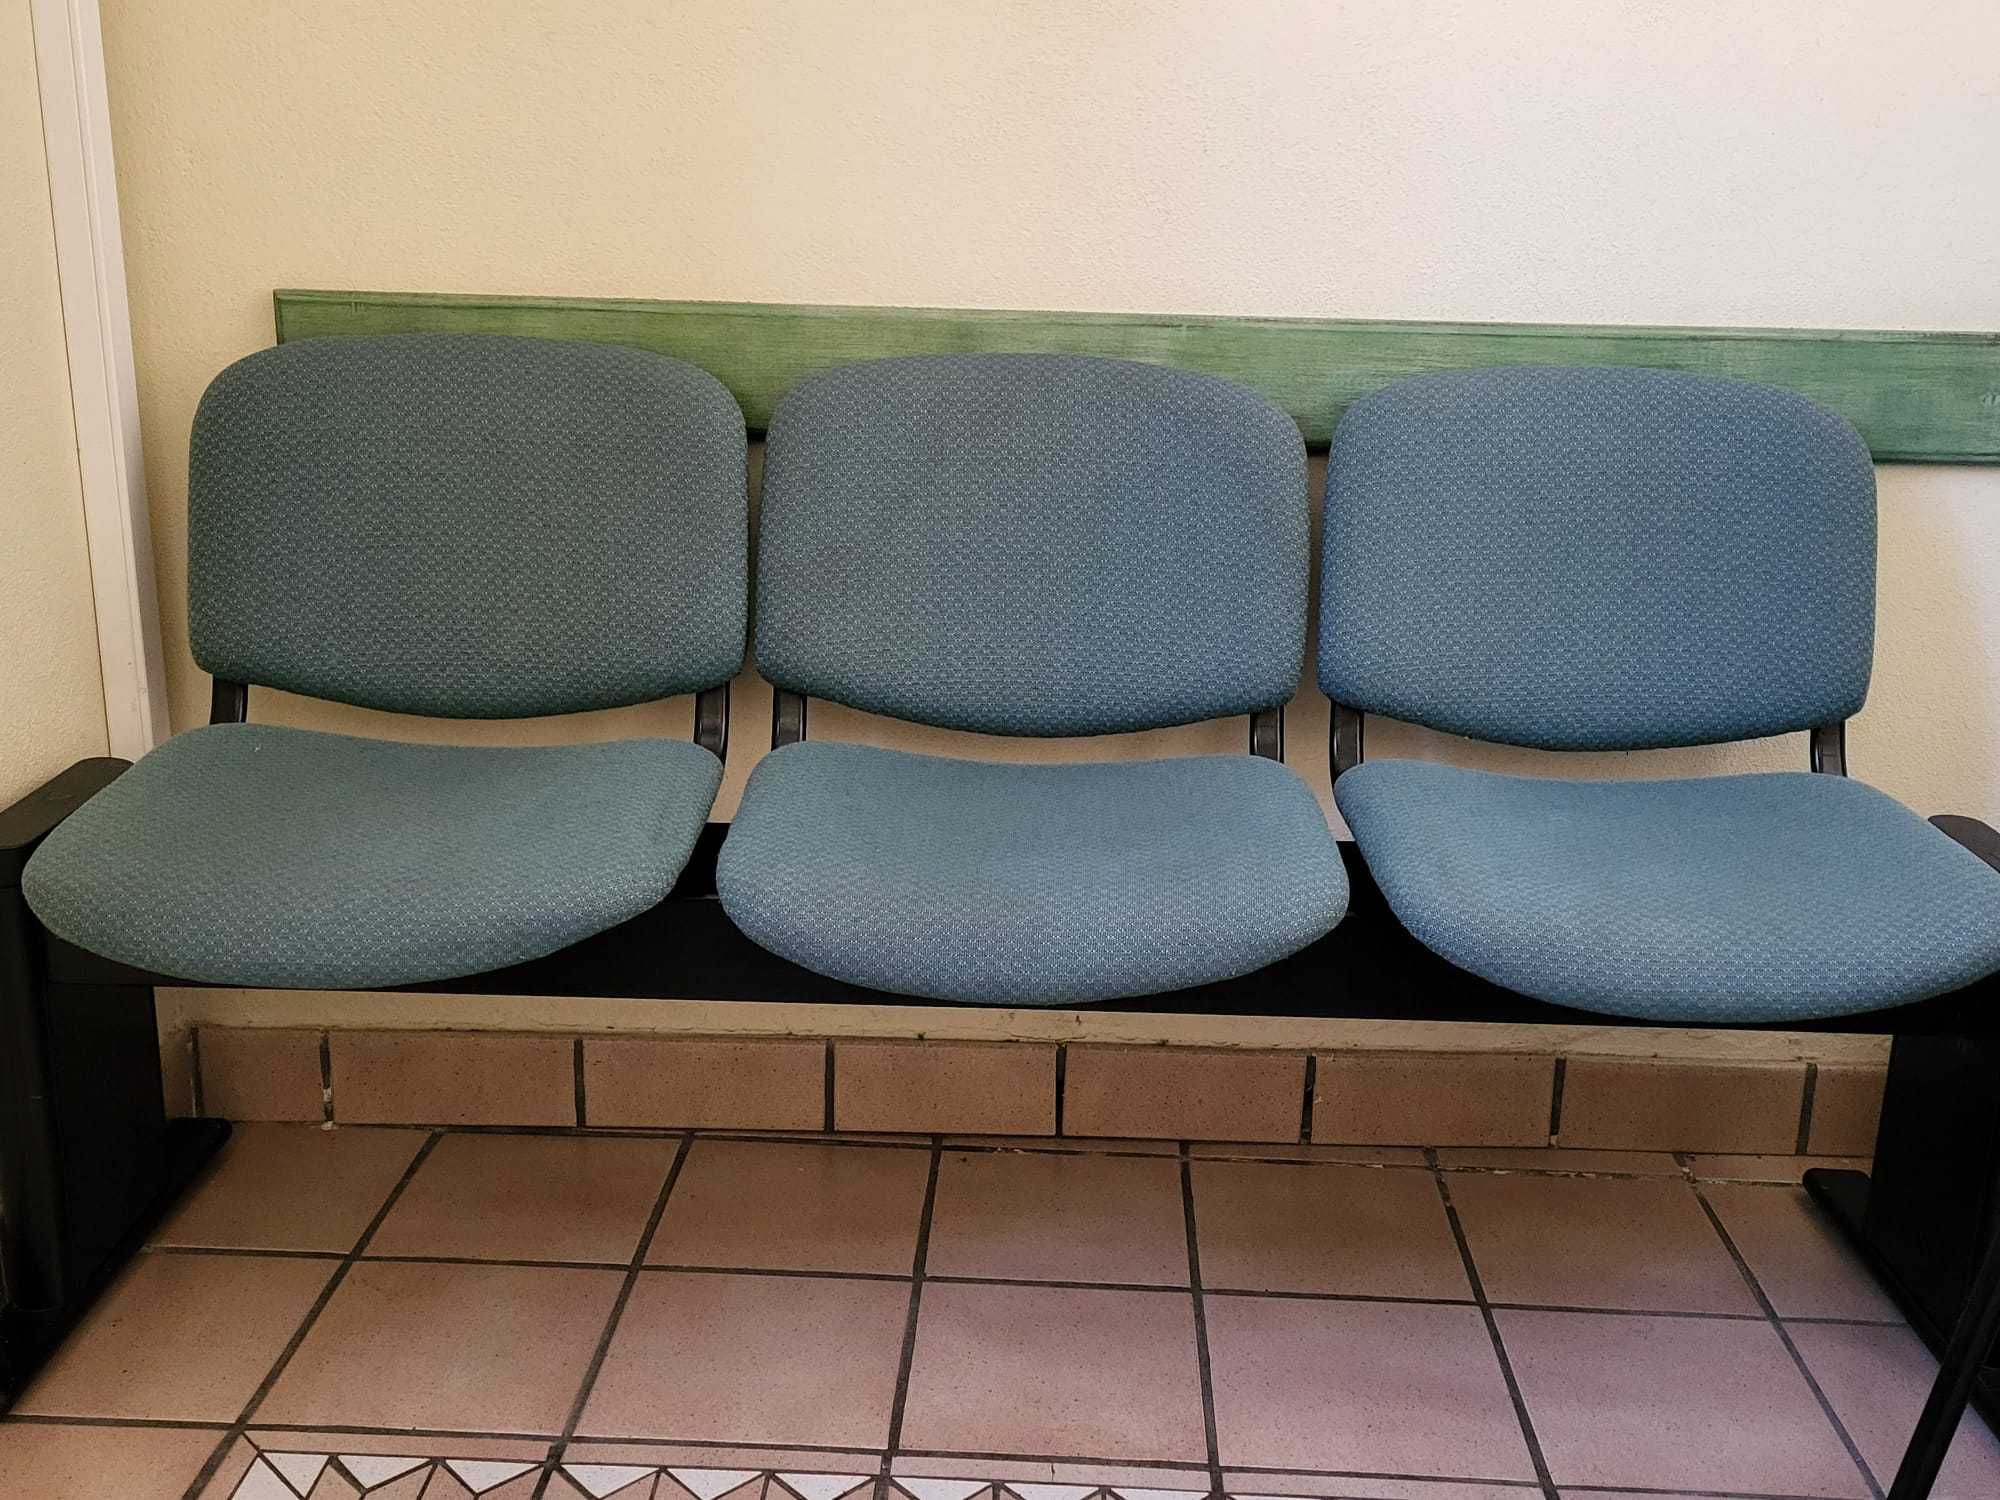 Bloco de 3 cadeiras + 5 cadeiras individuais - BOM ESTADO